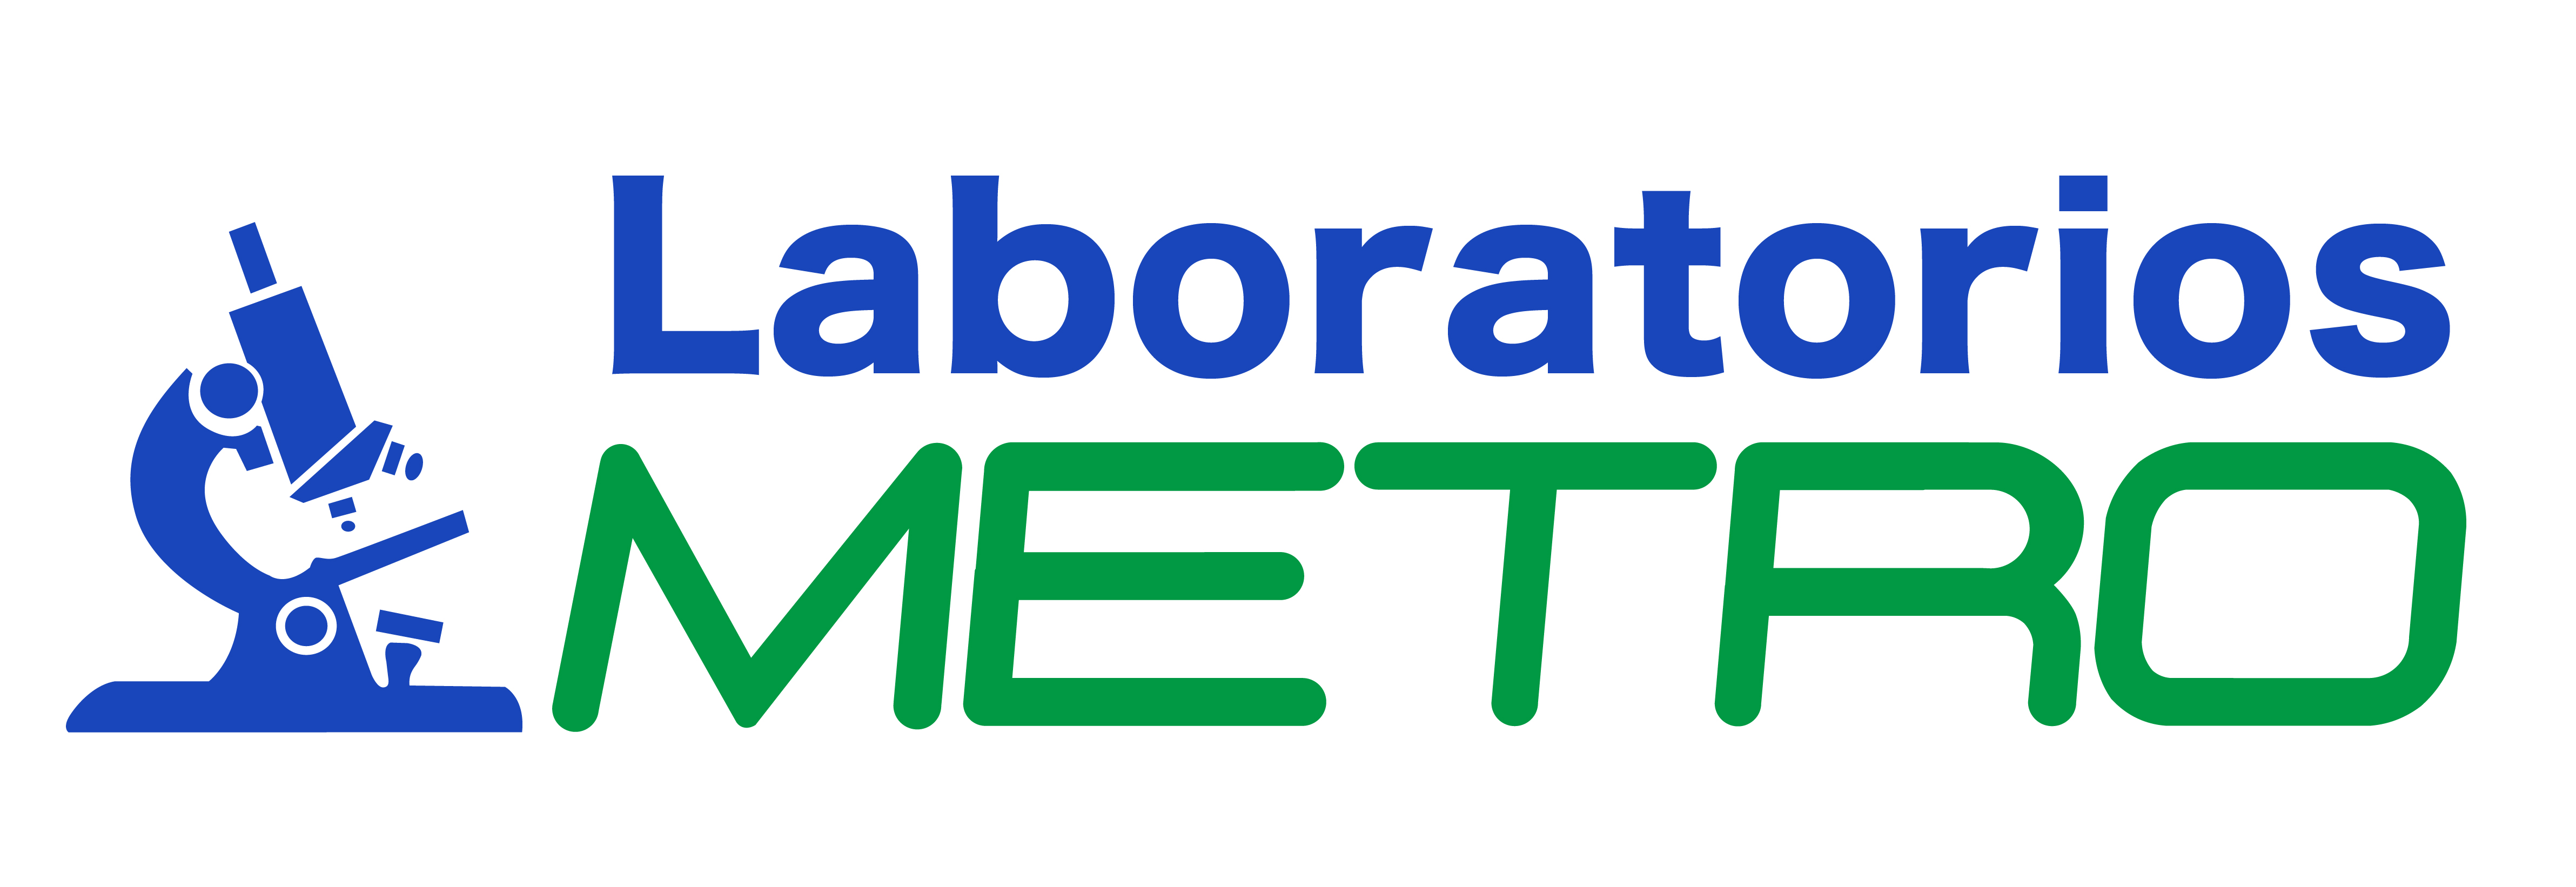 Servicios de Laboratorio Metro - Laboratorios Metro